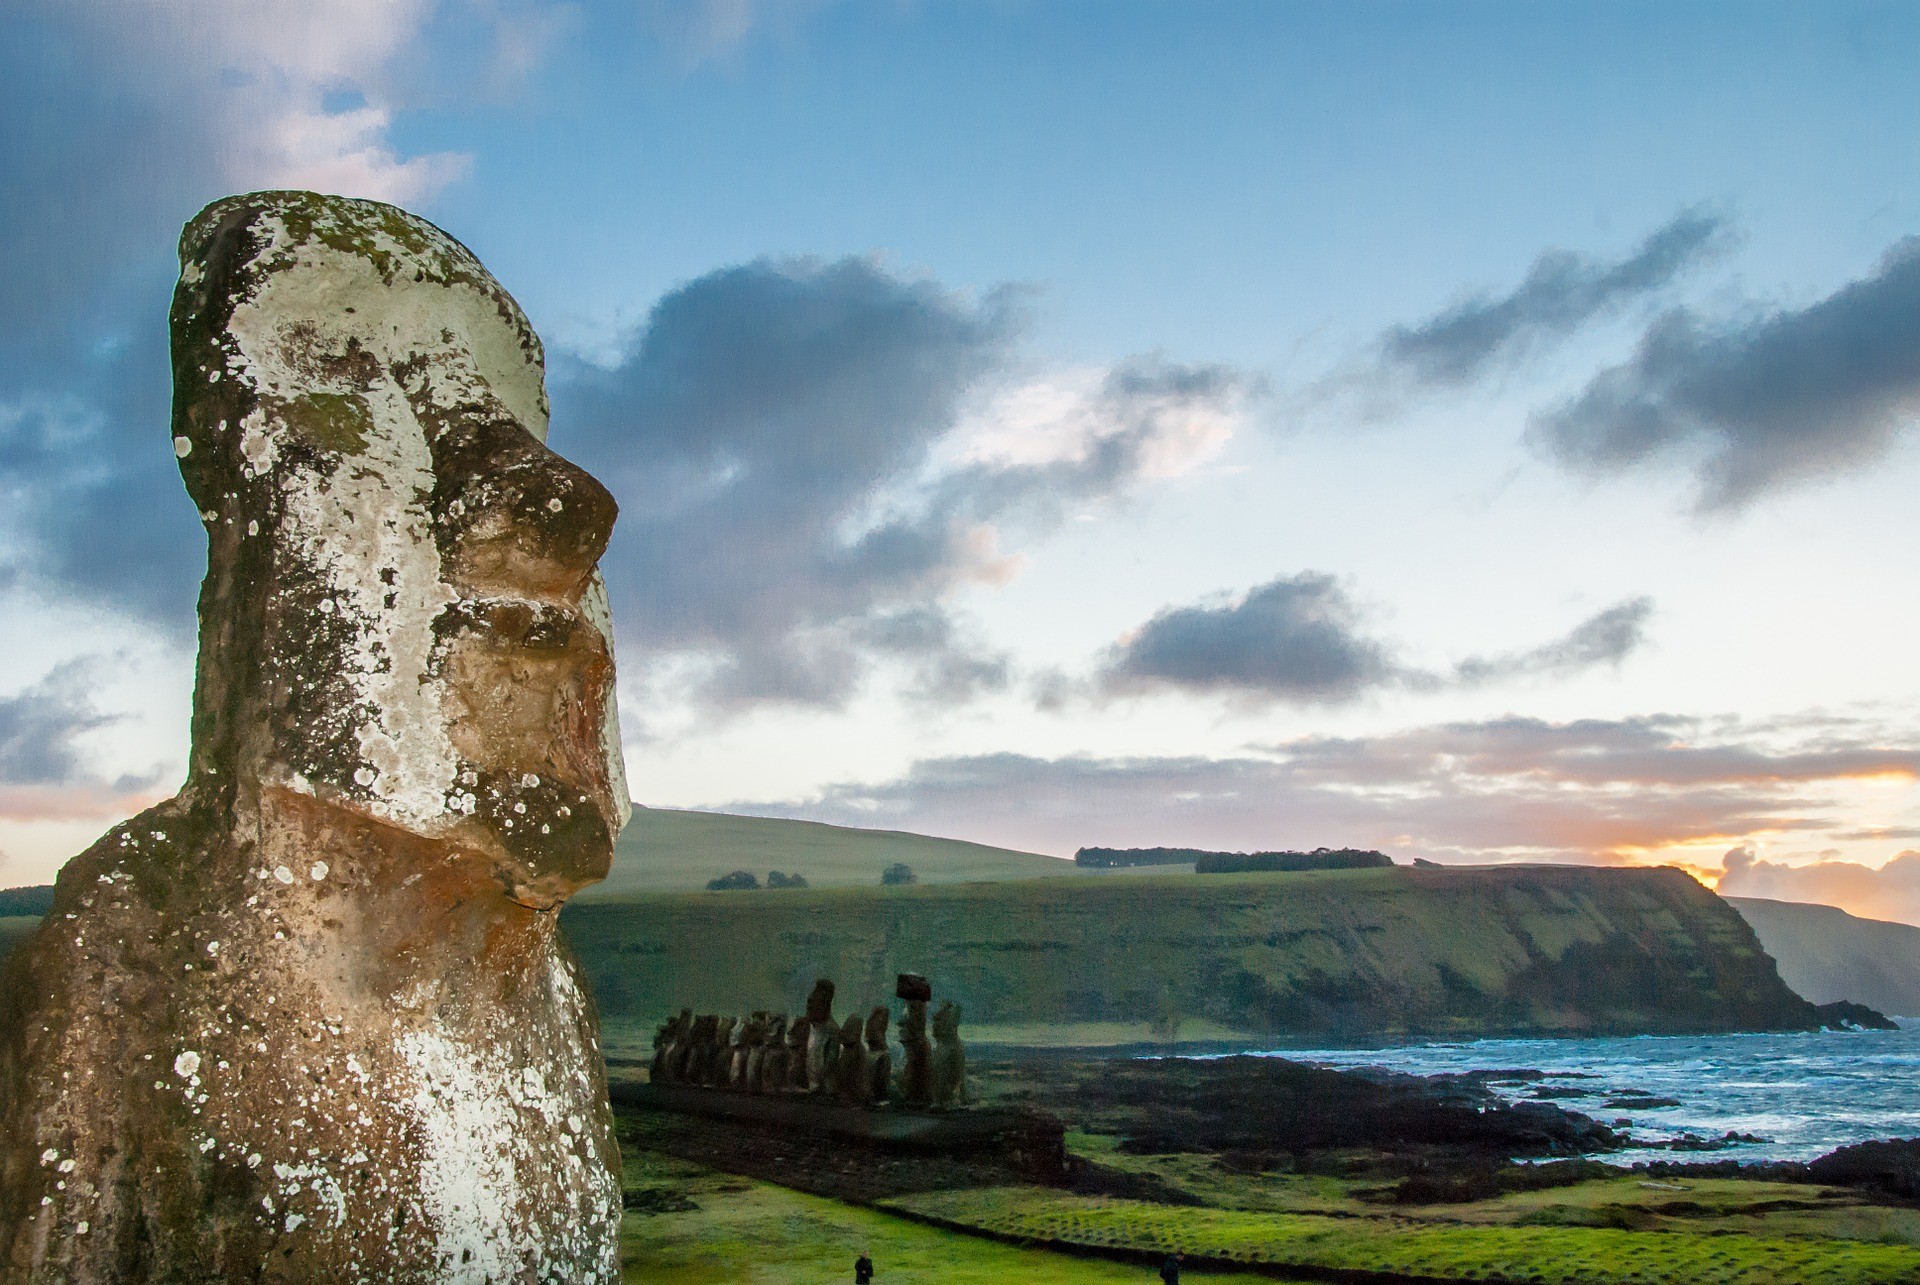 posąg moai na wyspie wielkanocnej